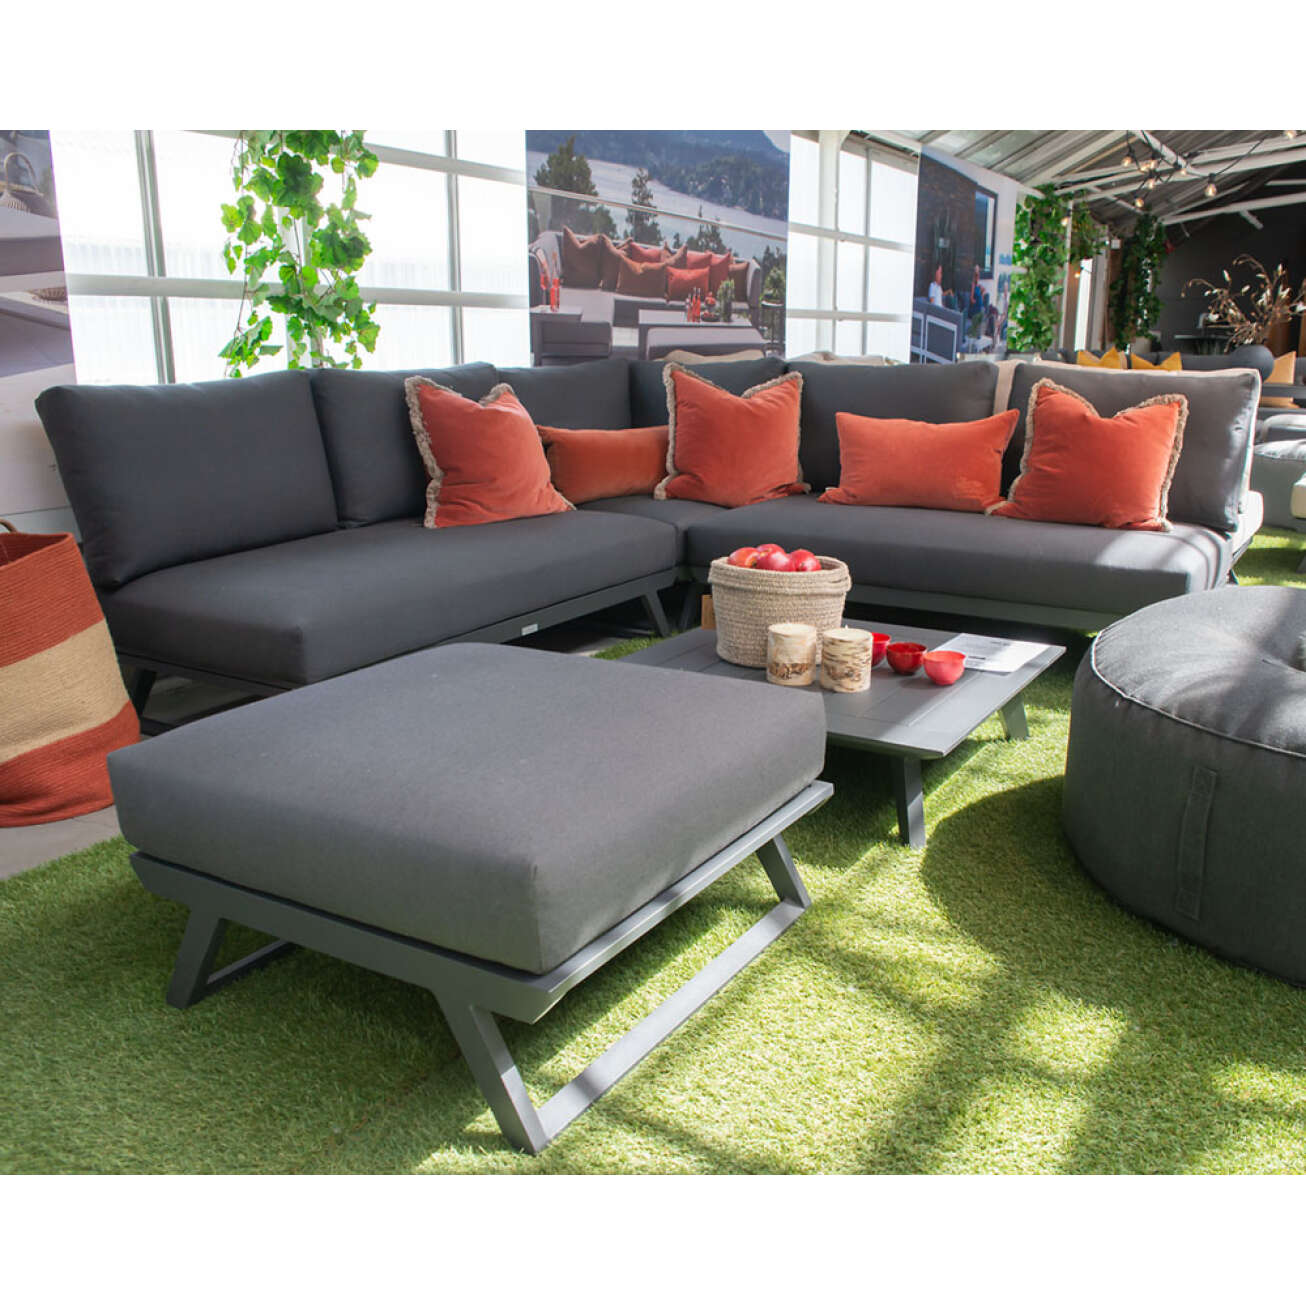 Fleksibel utendørs solsengsofa i sort fra Gardenart hos Fine Design hagemøbler